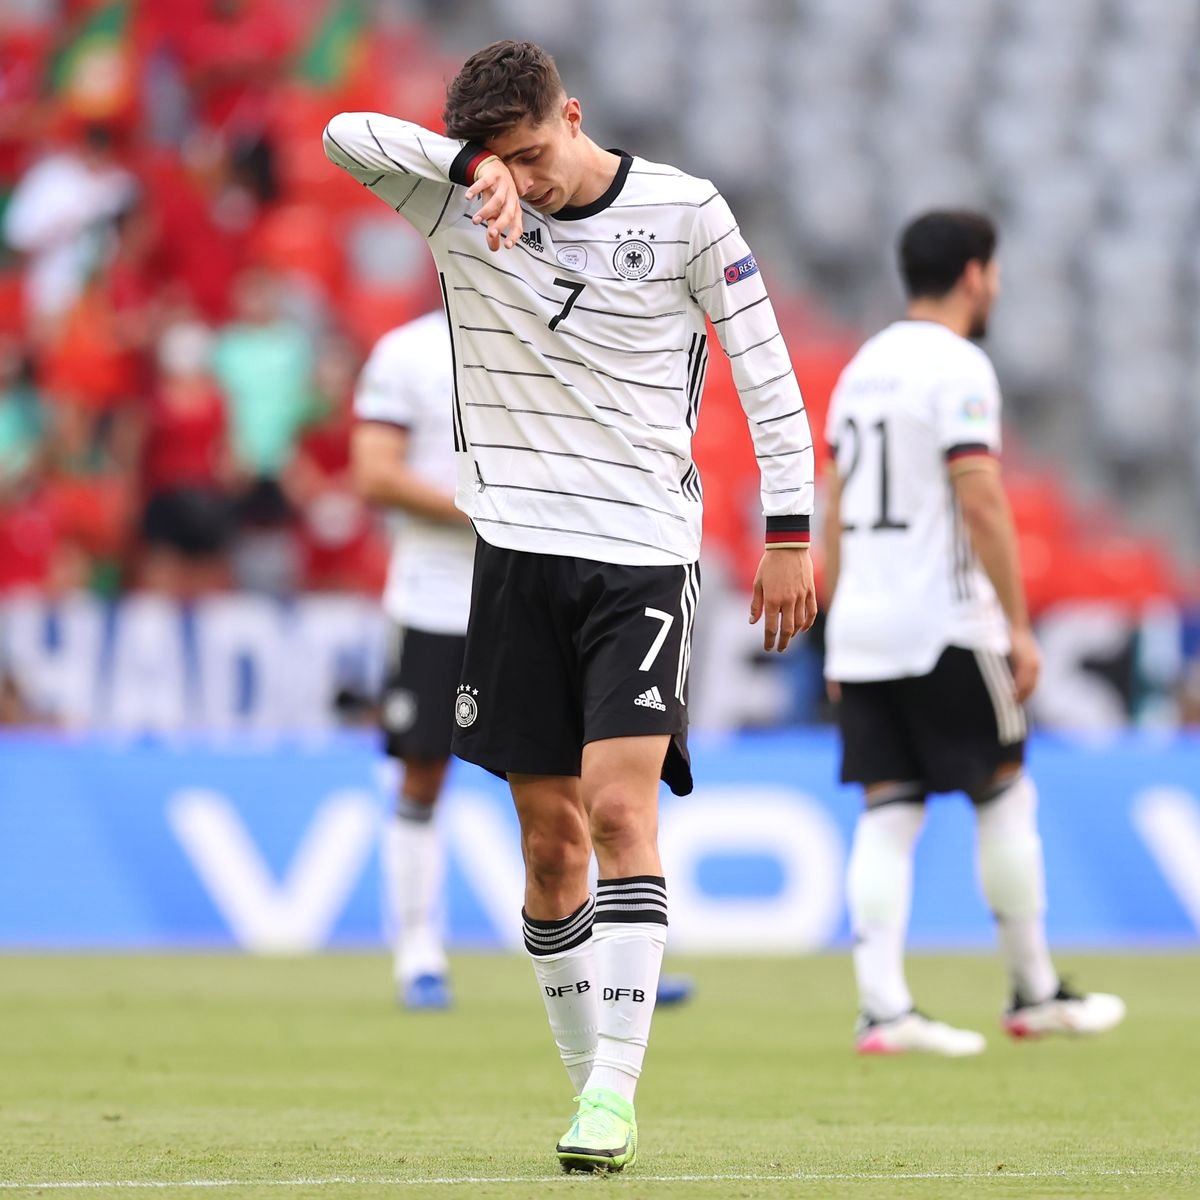 Եվրո-2020. Գերմանիան դրամատիկ խաղում հաղթեց Պորտուգալիային․ տեսանյութ